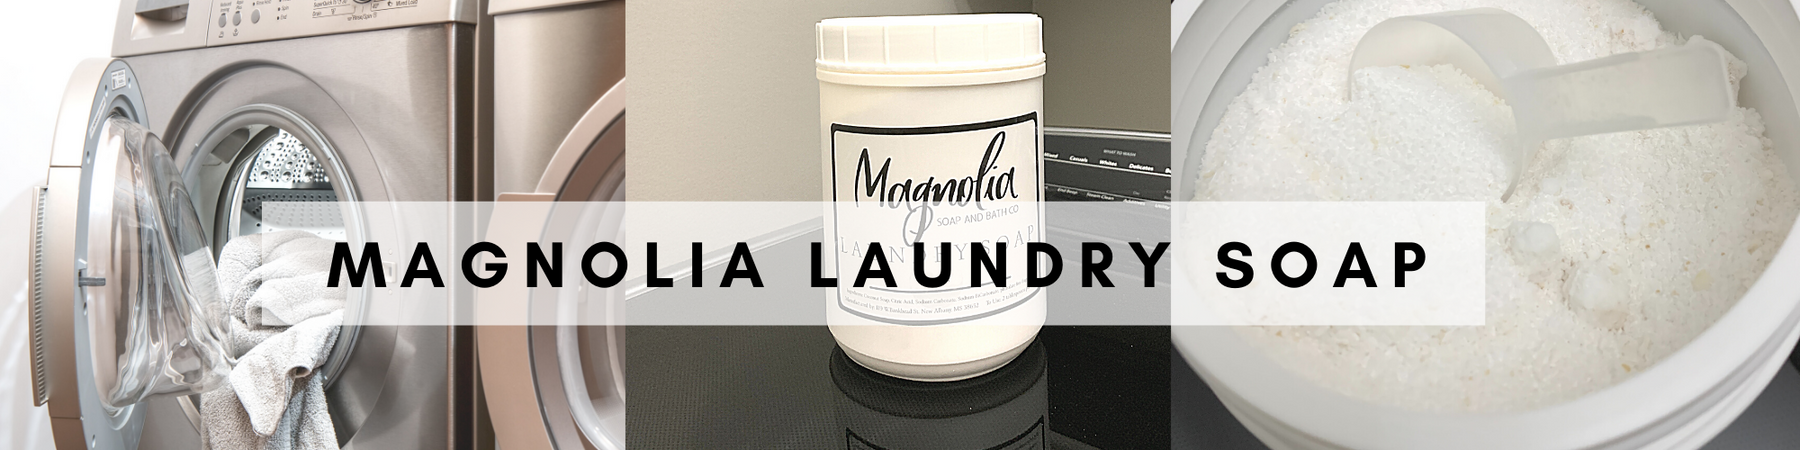 Magnolia Laundry Soap